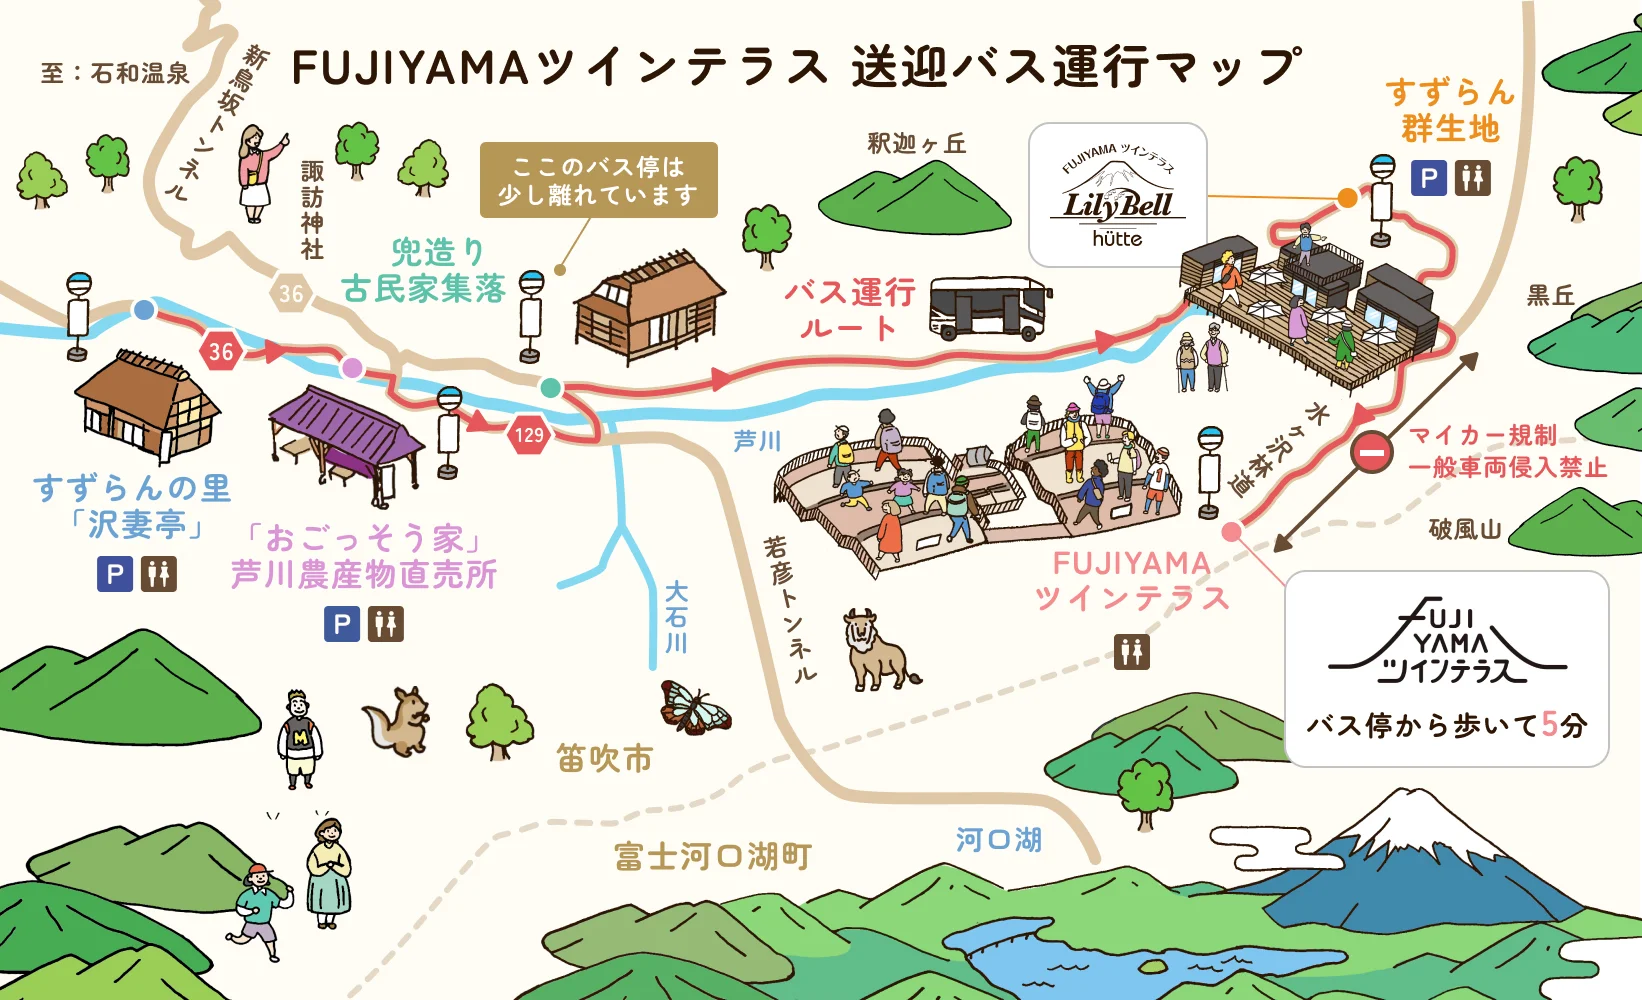 FUJIYAMAツインテラス送迎バス運行マップ